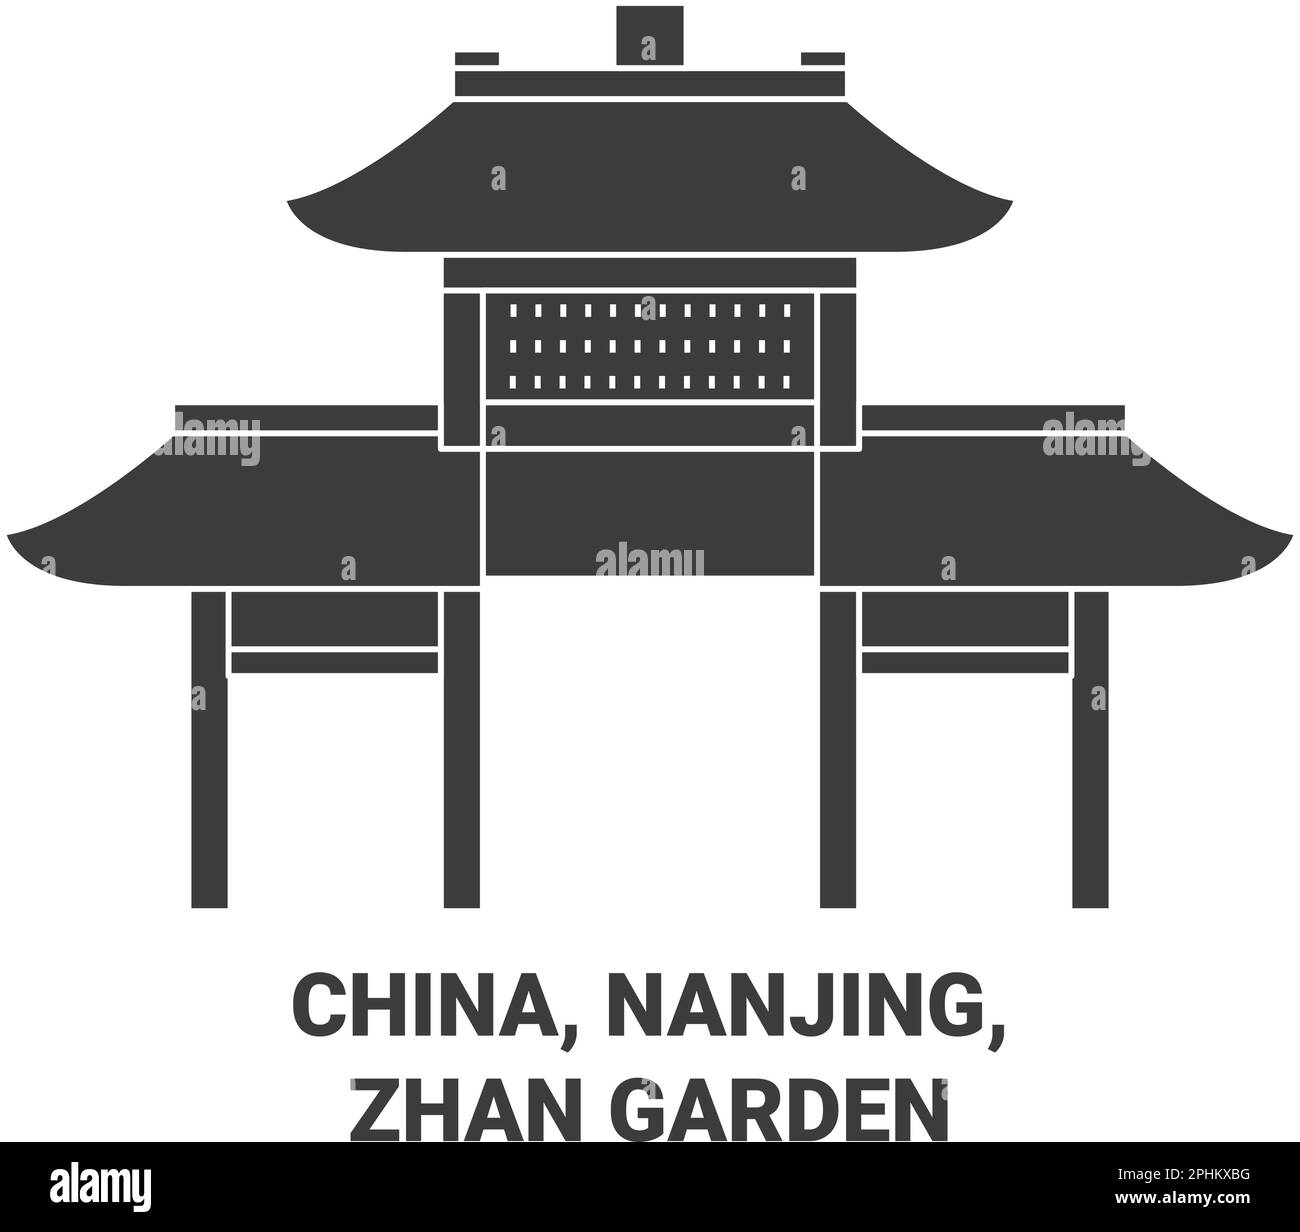 China, Nanjing, Zhan Garden travel landmark vector illustration Stock Vector